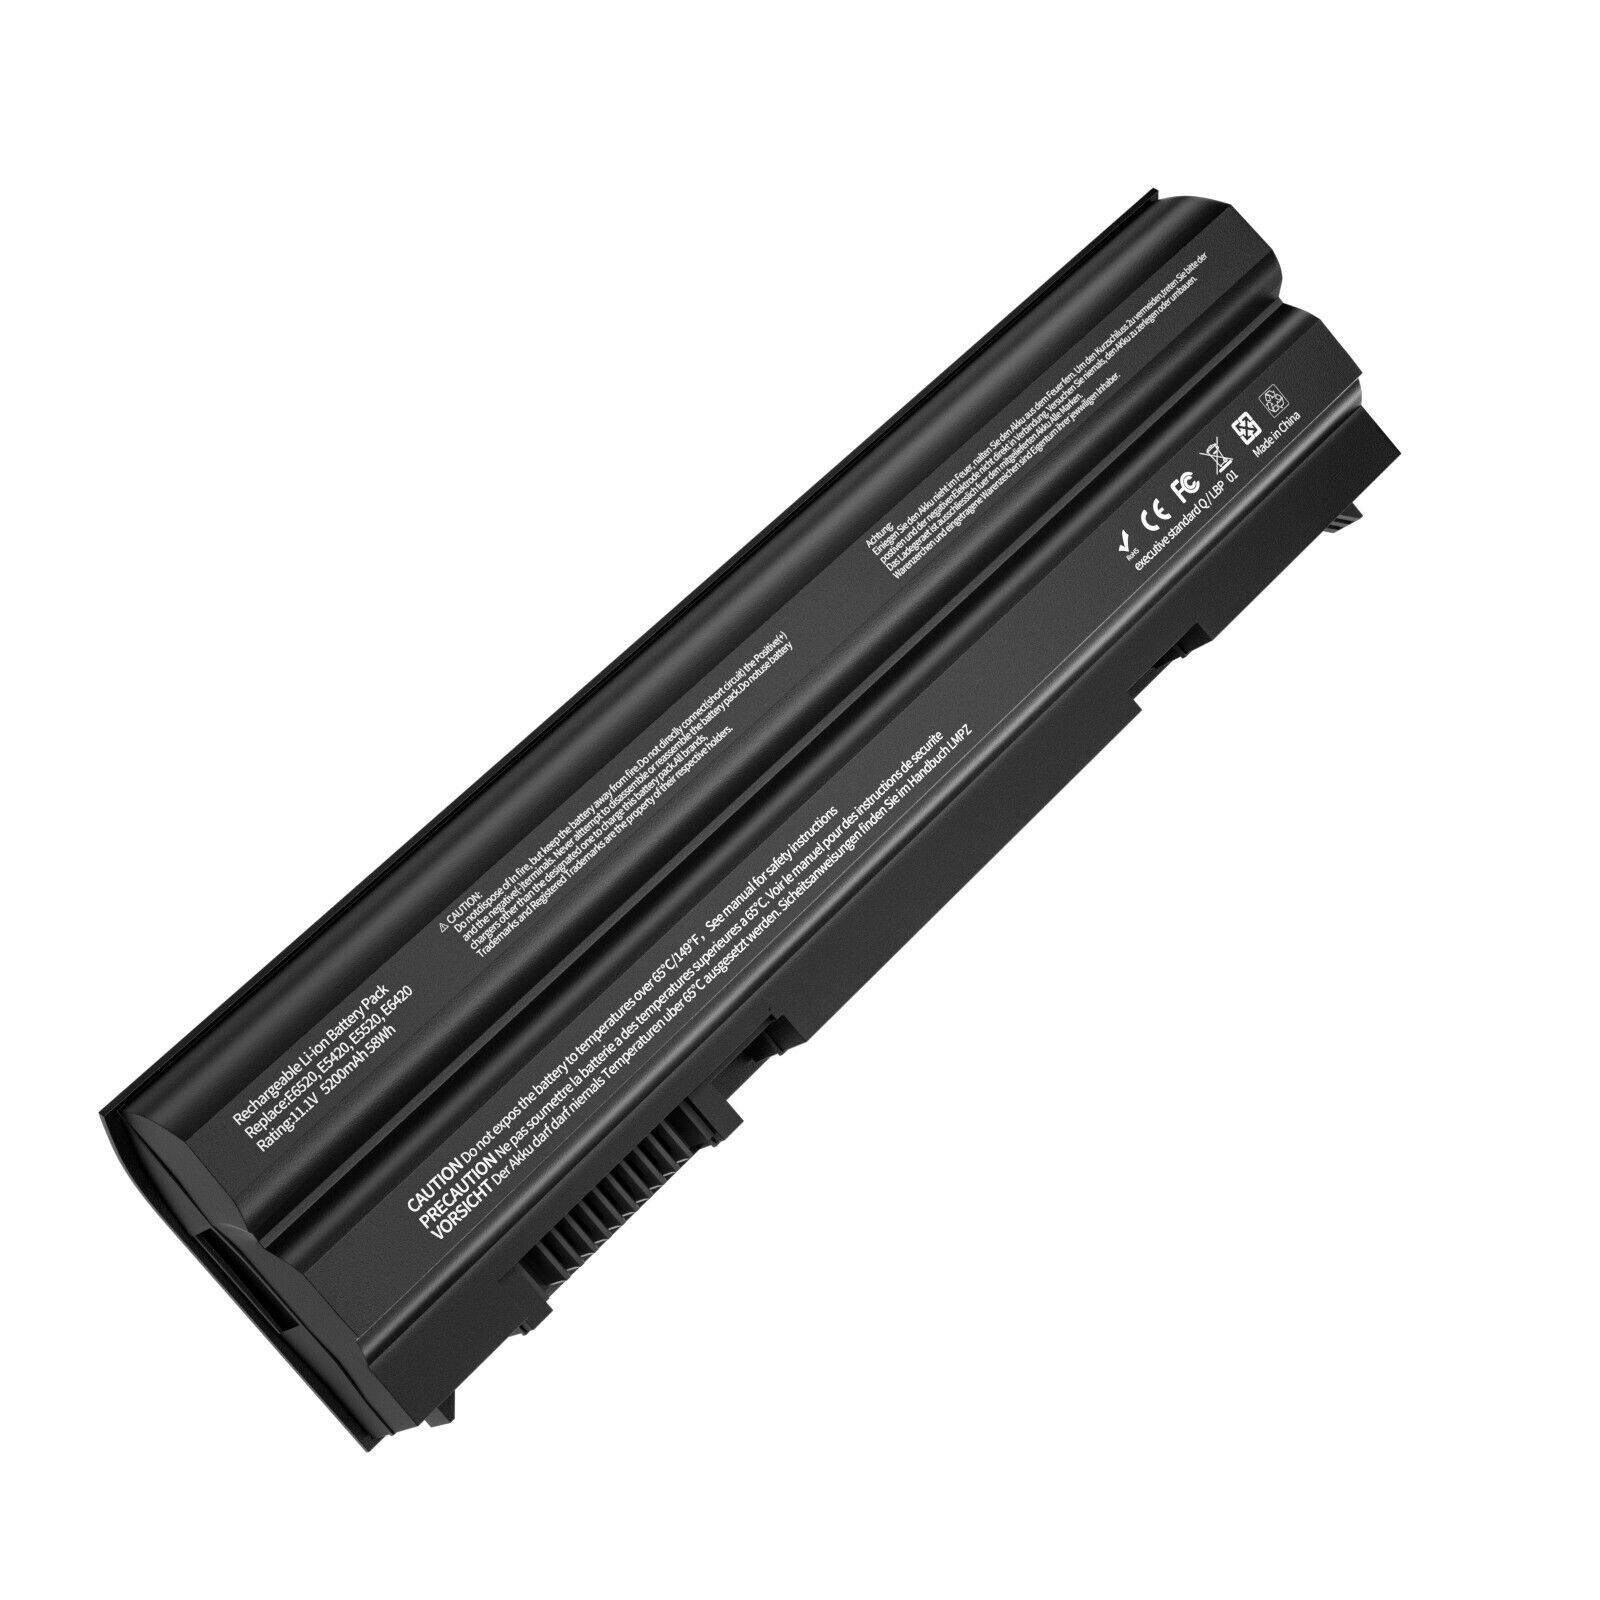 E6420 Battery For Dell Latitude E6440 E5430 E5520 E5530 E6430 E6520 E6540 T54FJ